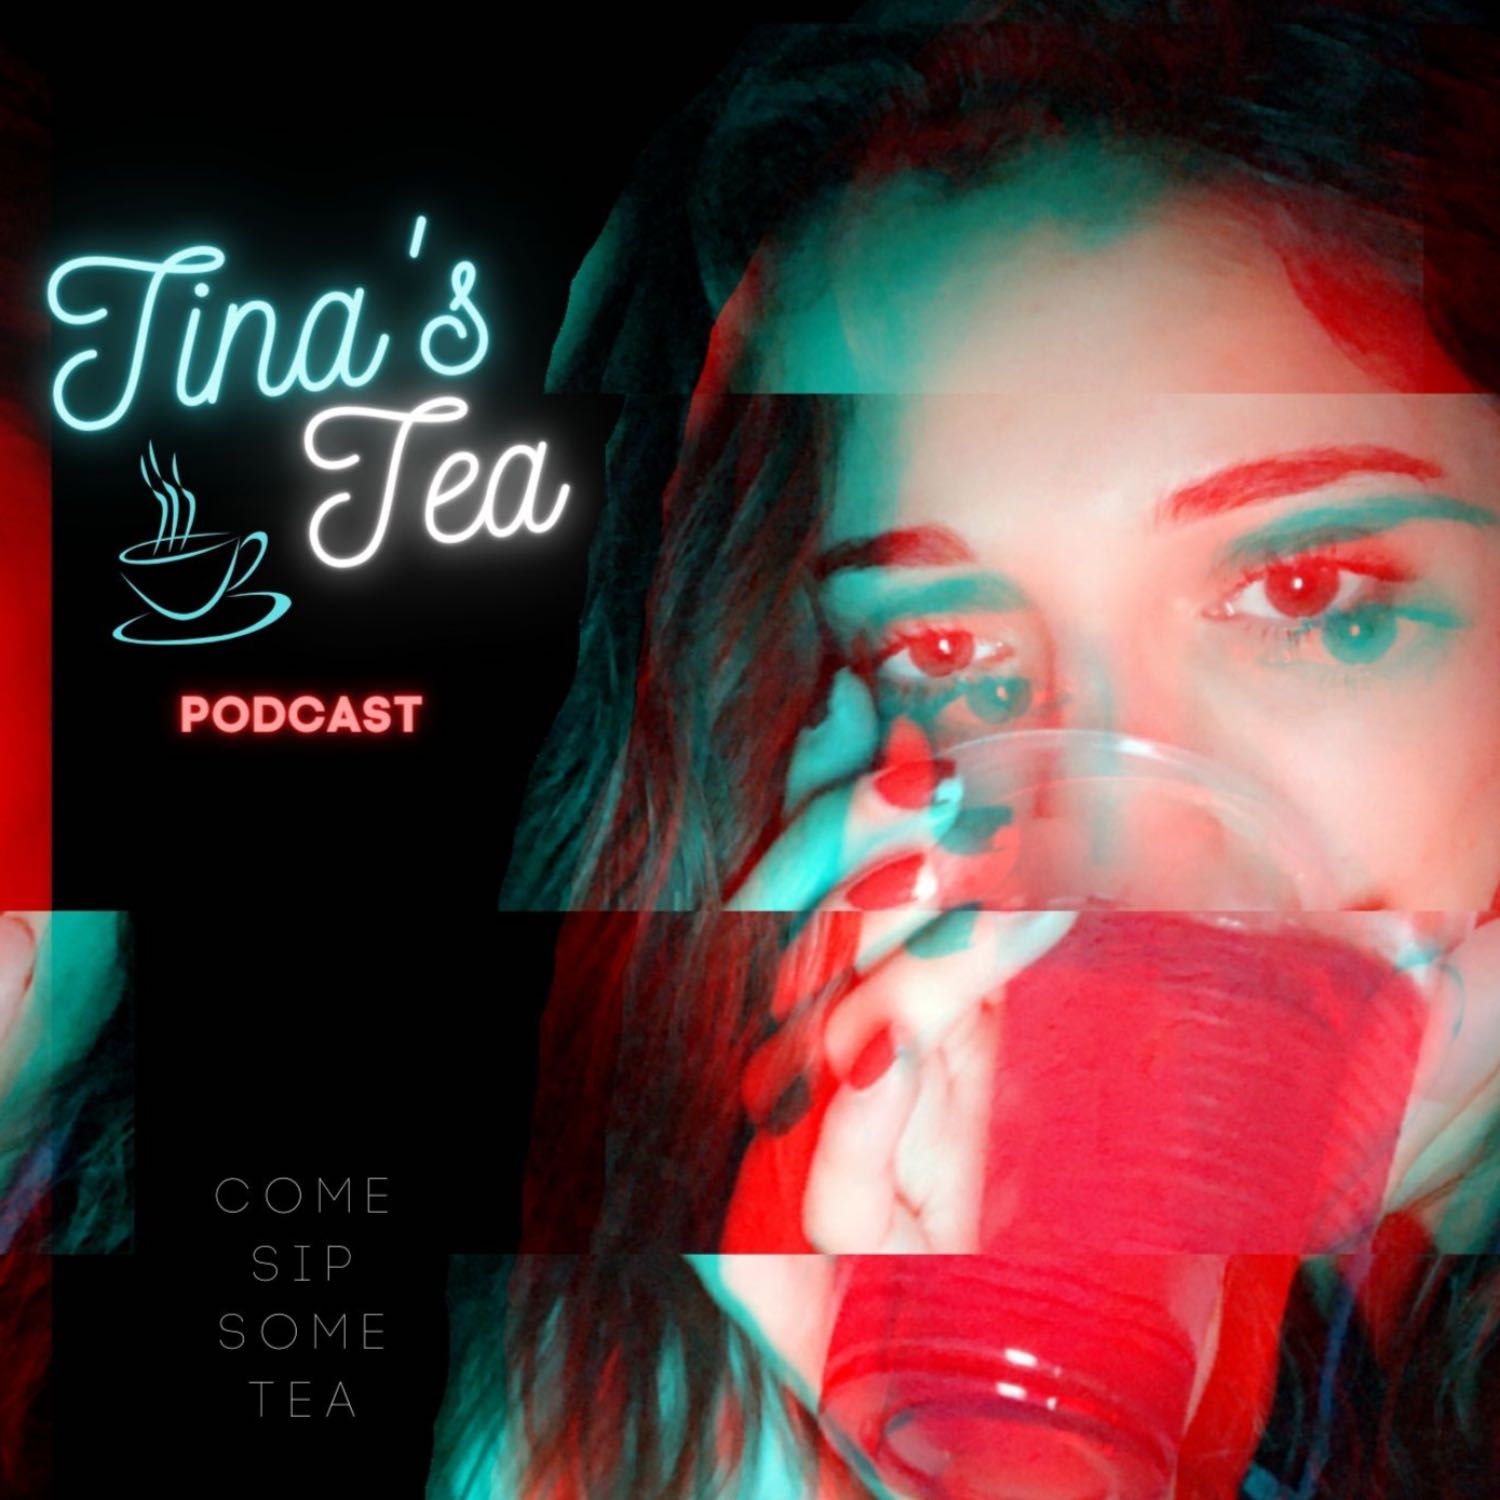 Tina's Tea